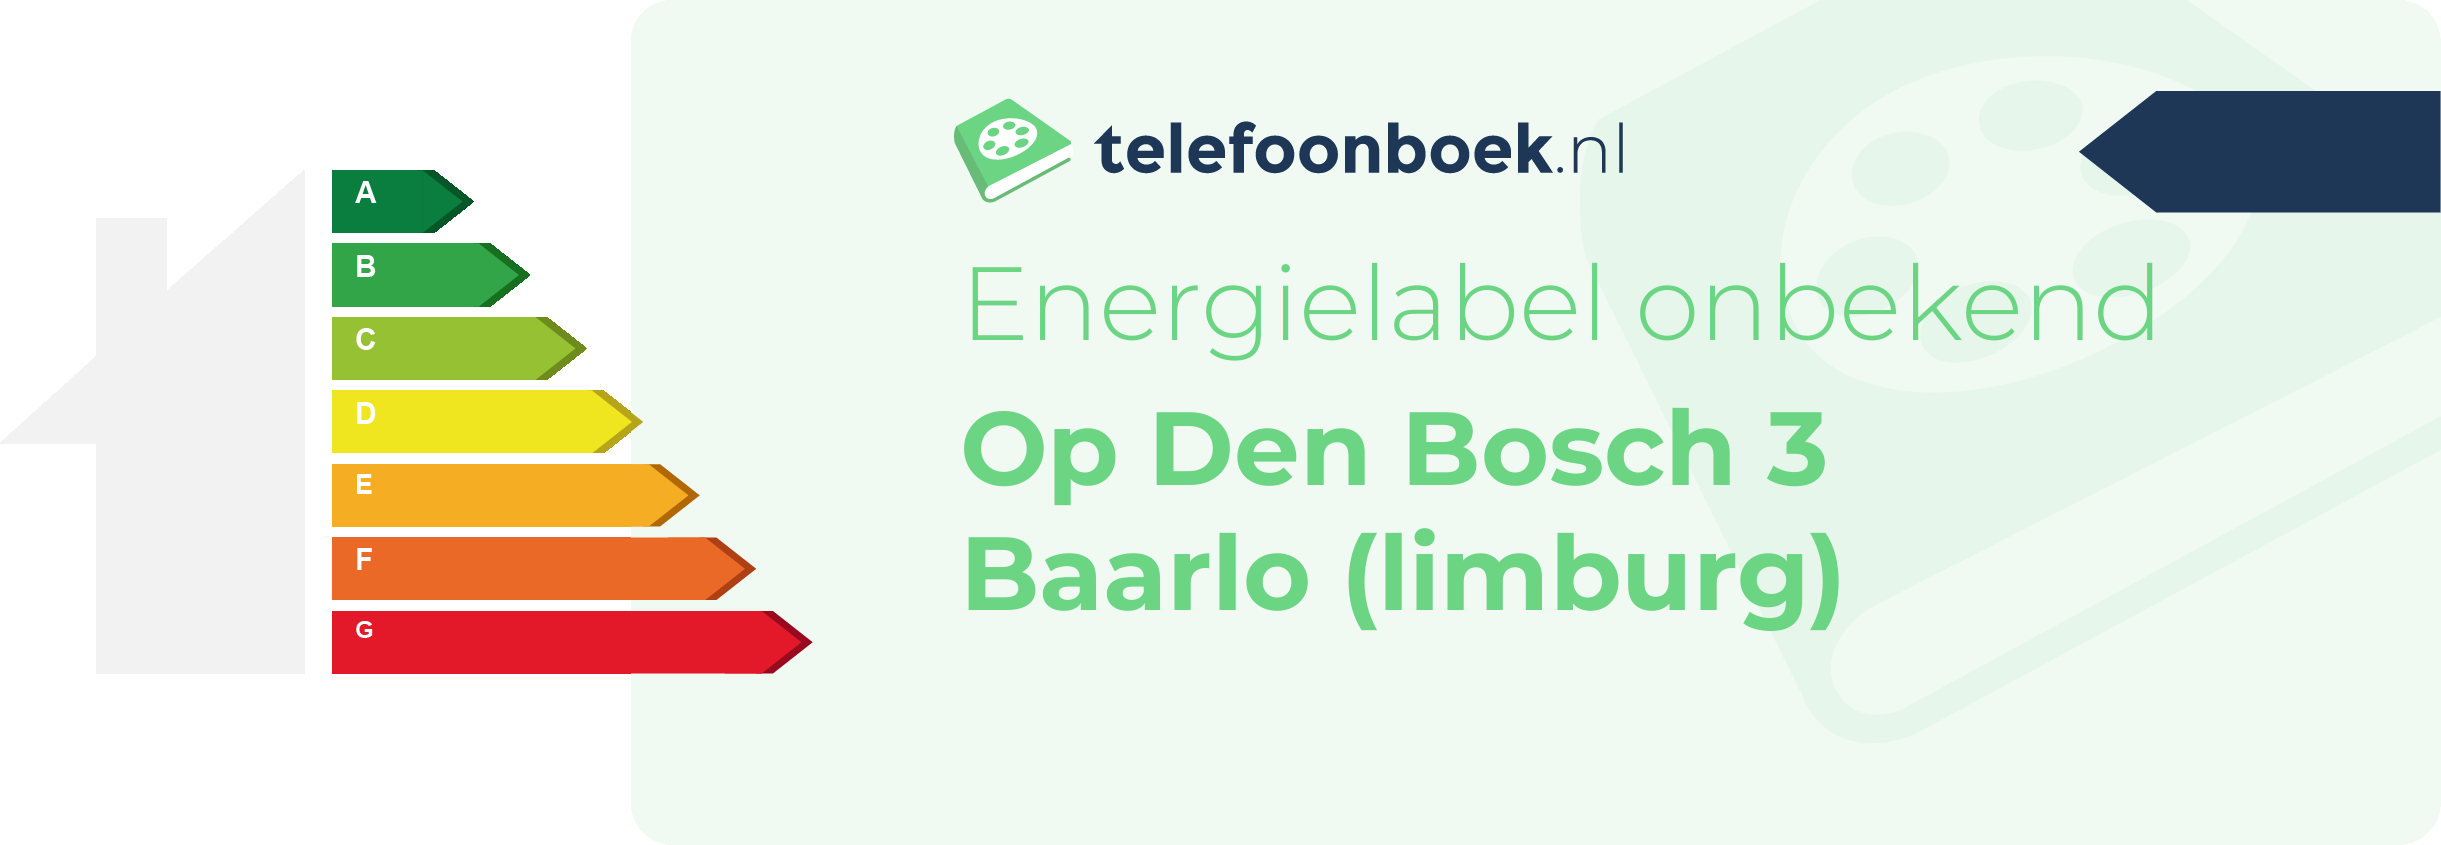 Energielabel Op Den Bosch 3 Baarlo (Limburg)